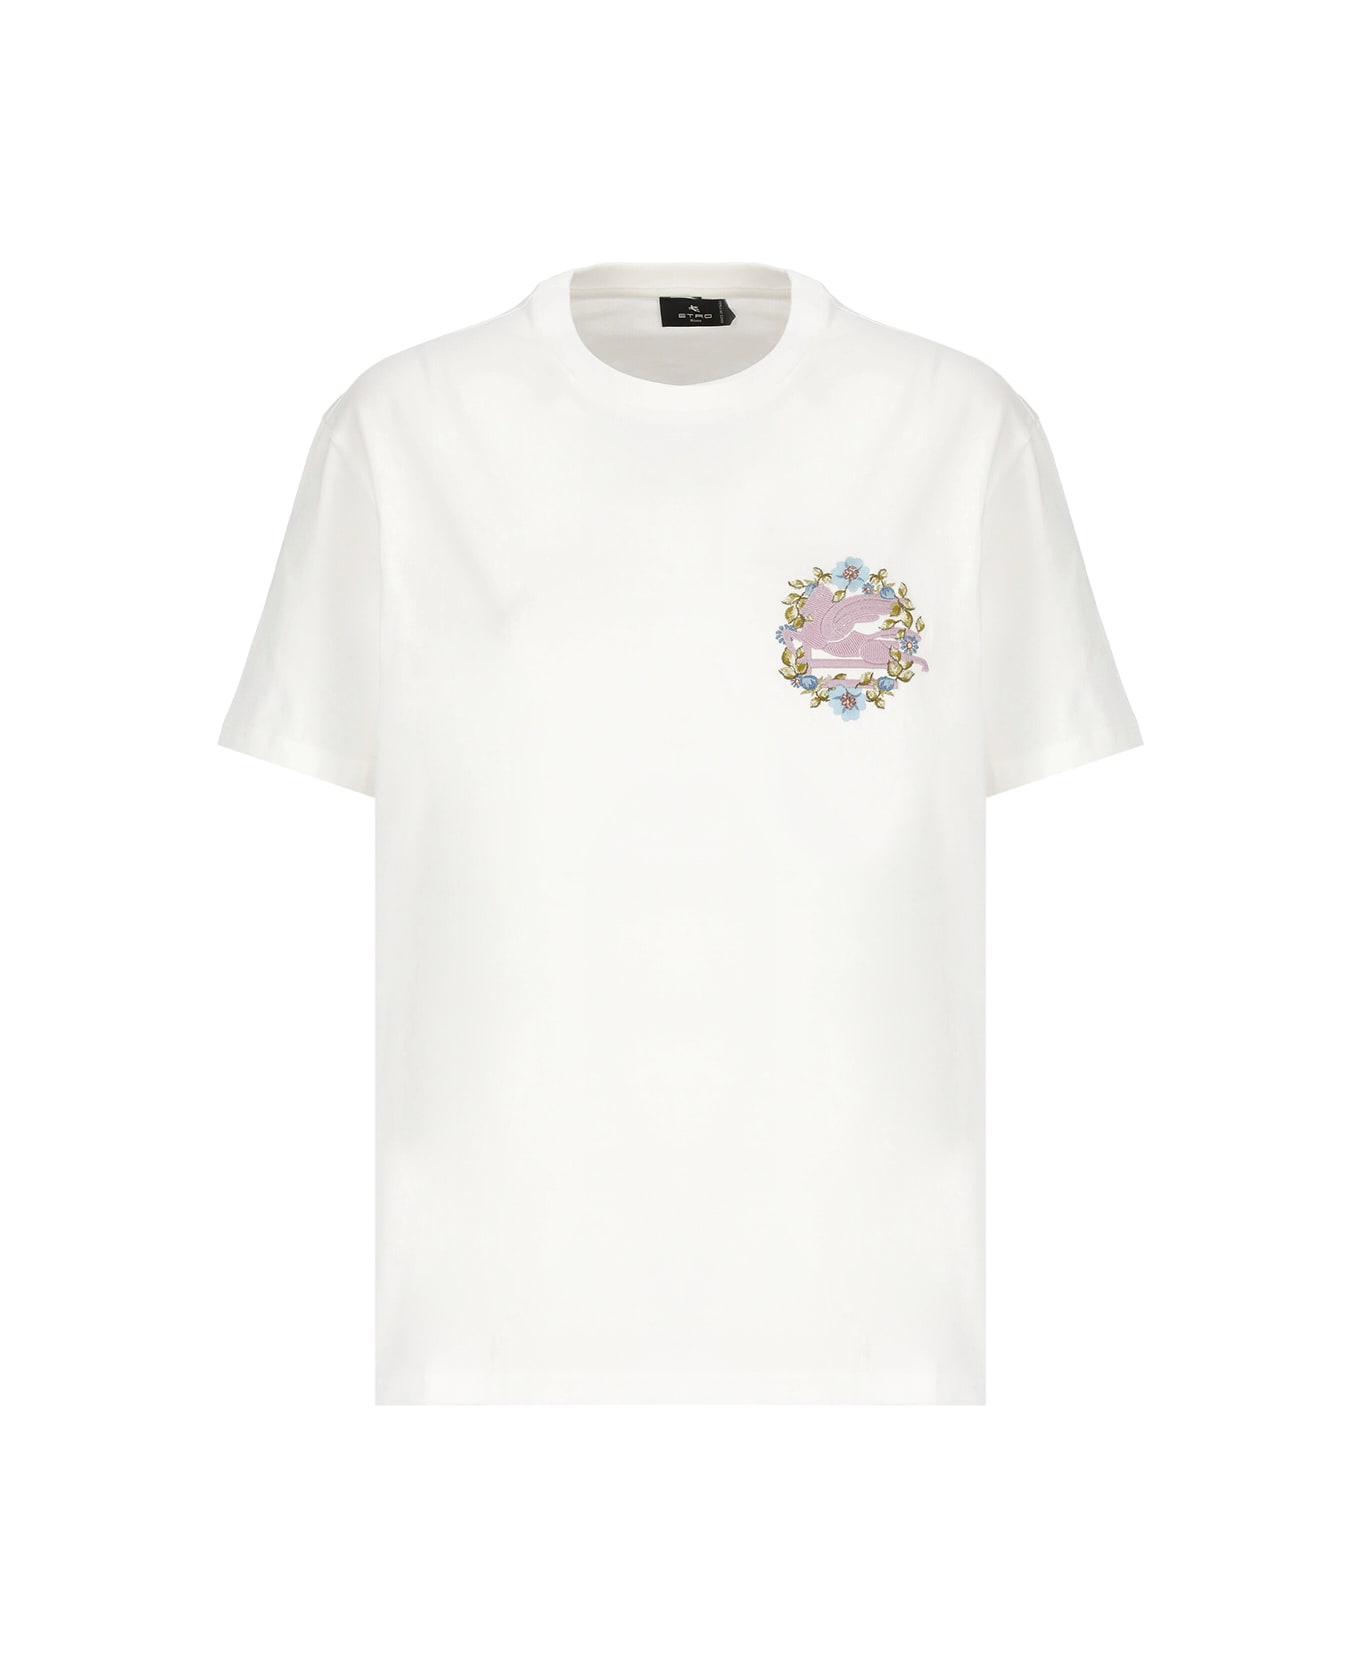 Etro T-shirt With Logo - White